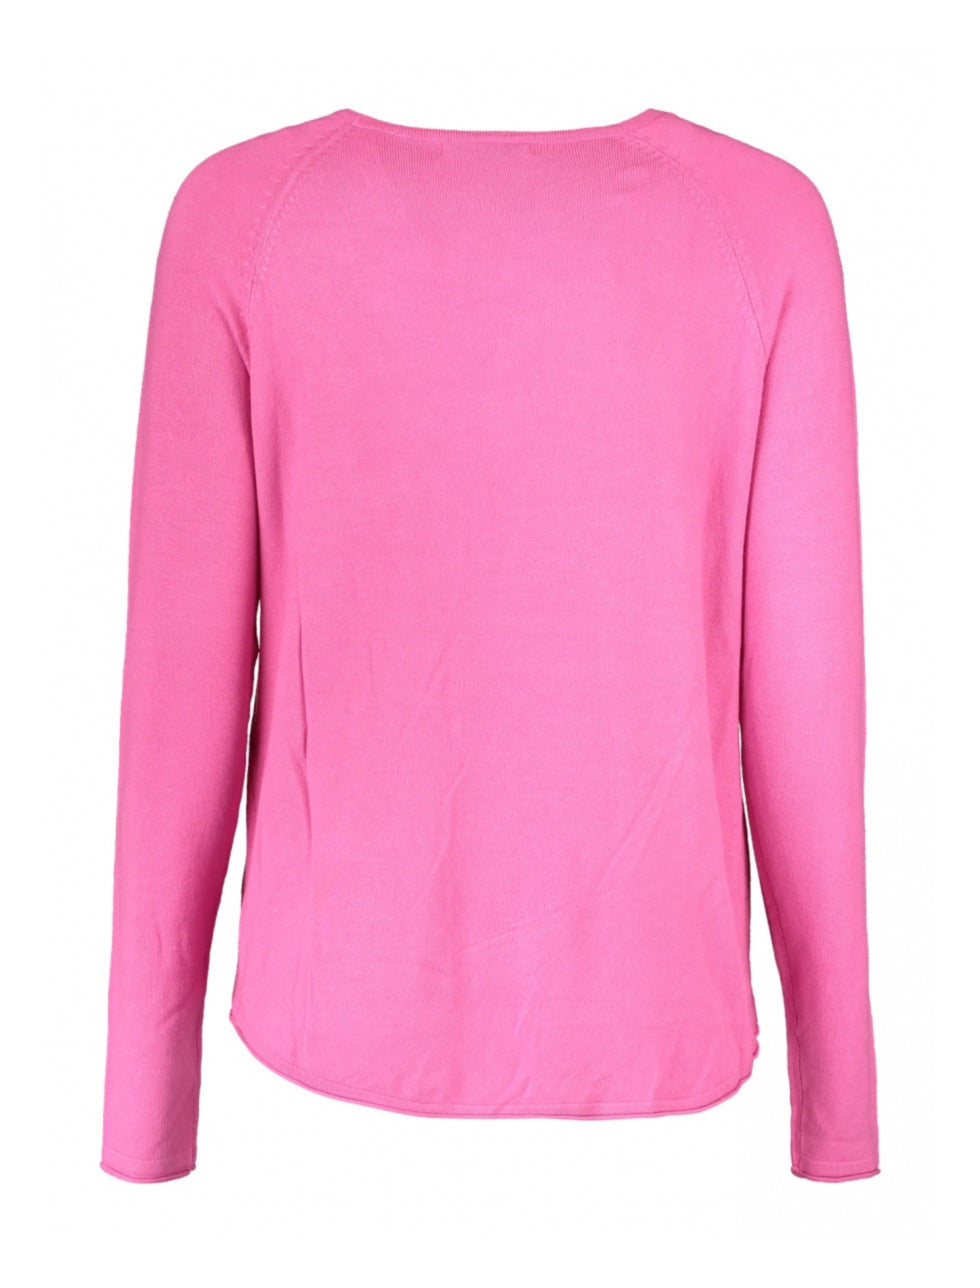 Marin Summer Pink Knit Top